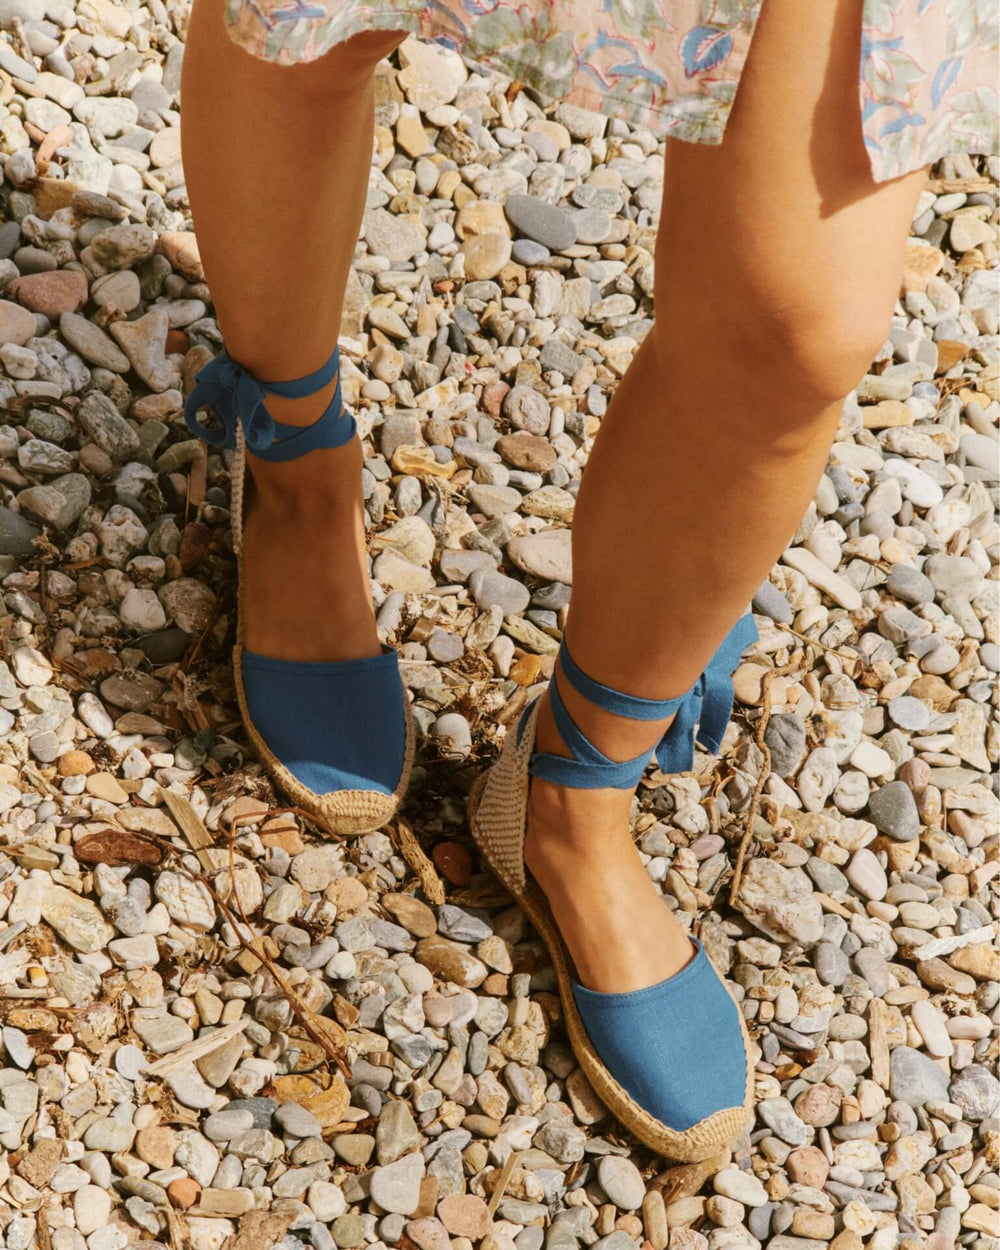 Women walking in blue shoes